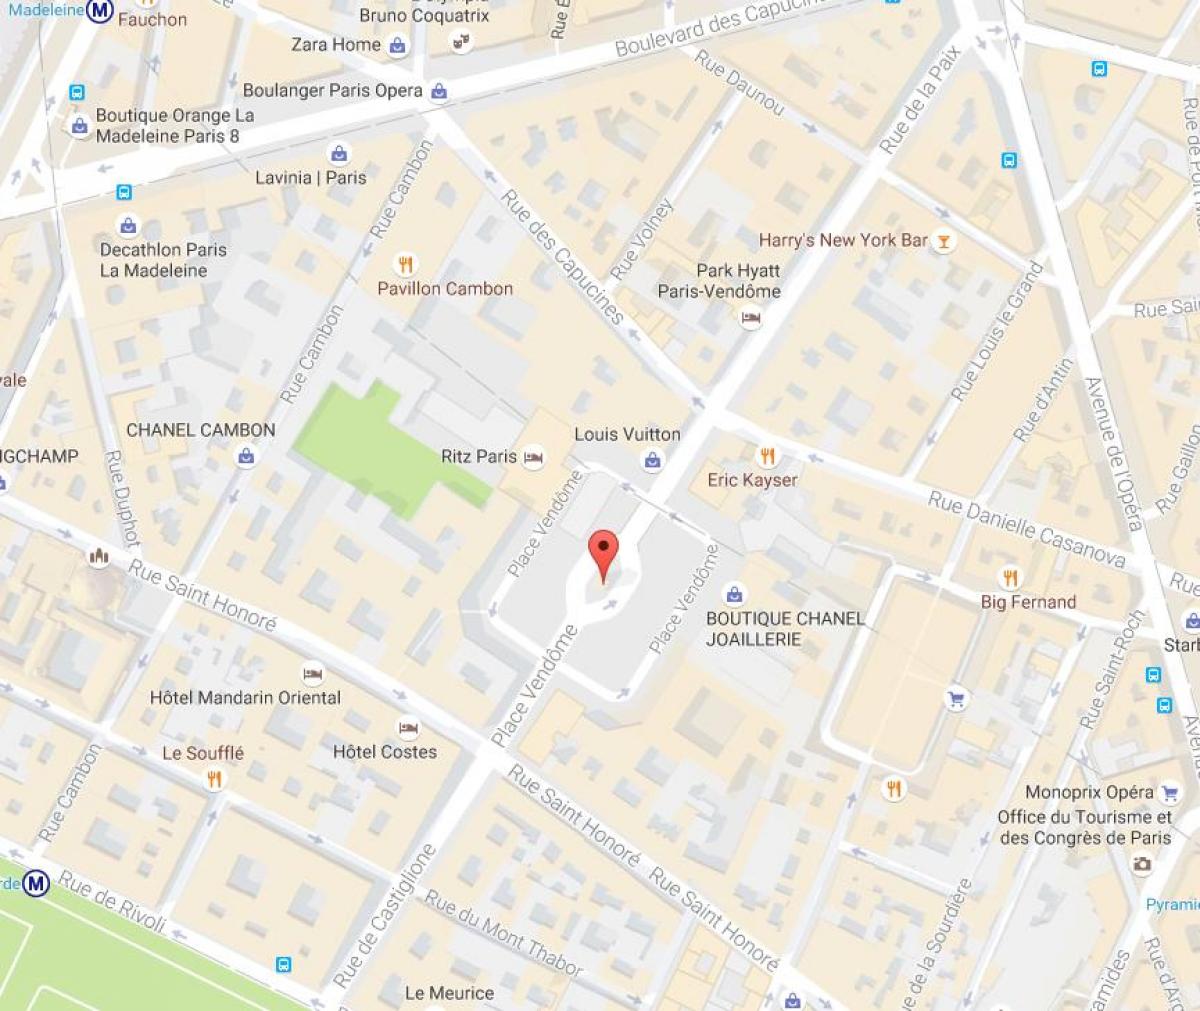 Mapa da Place Vendôme